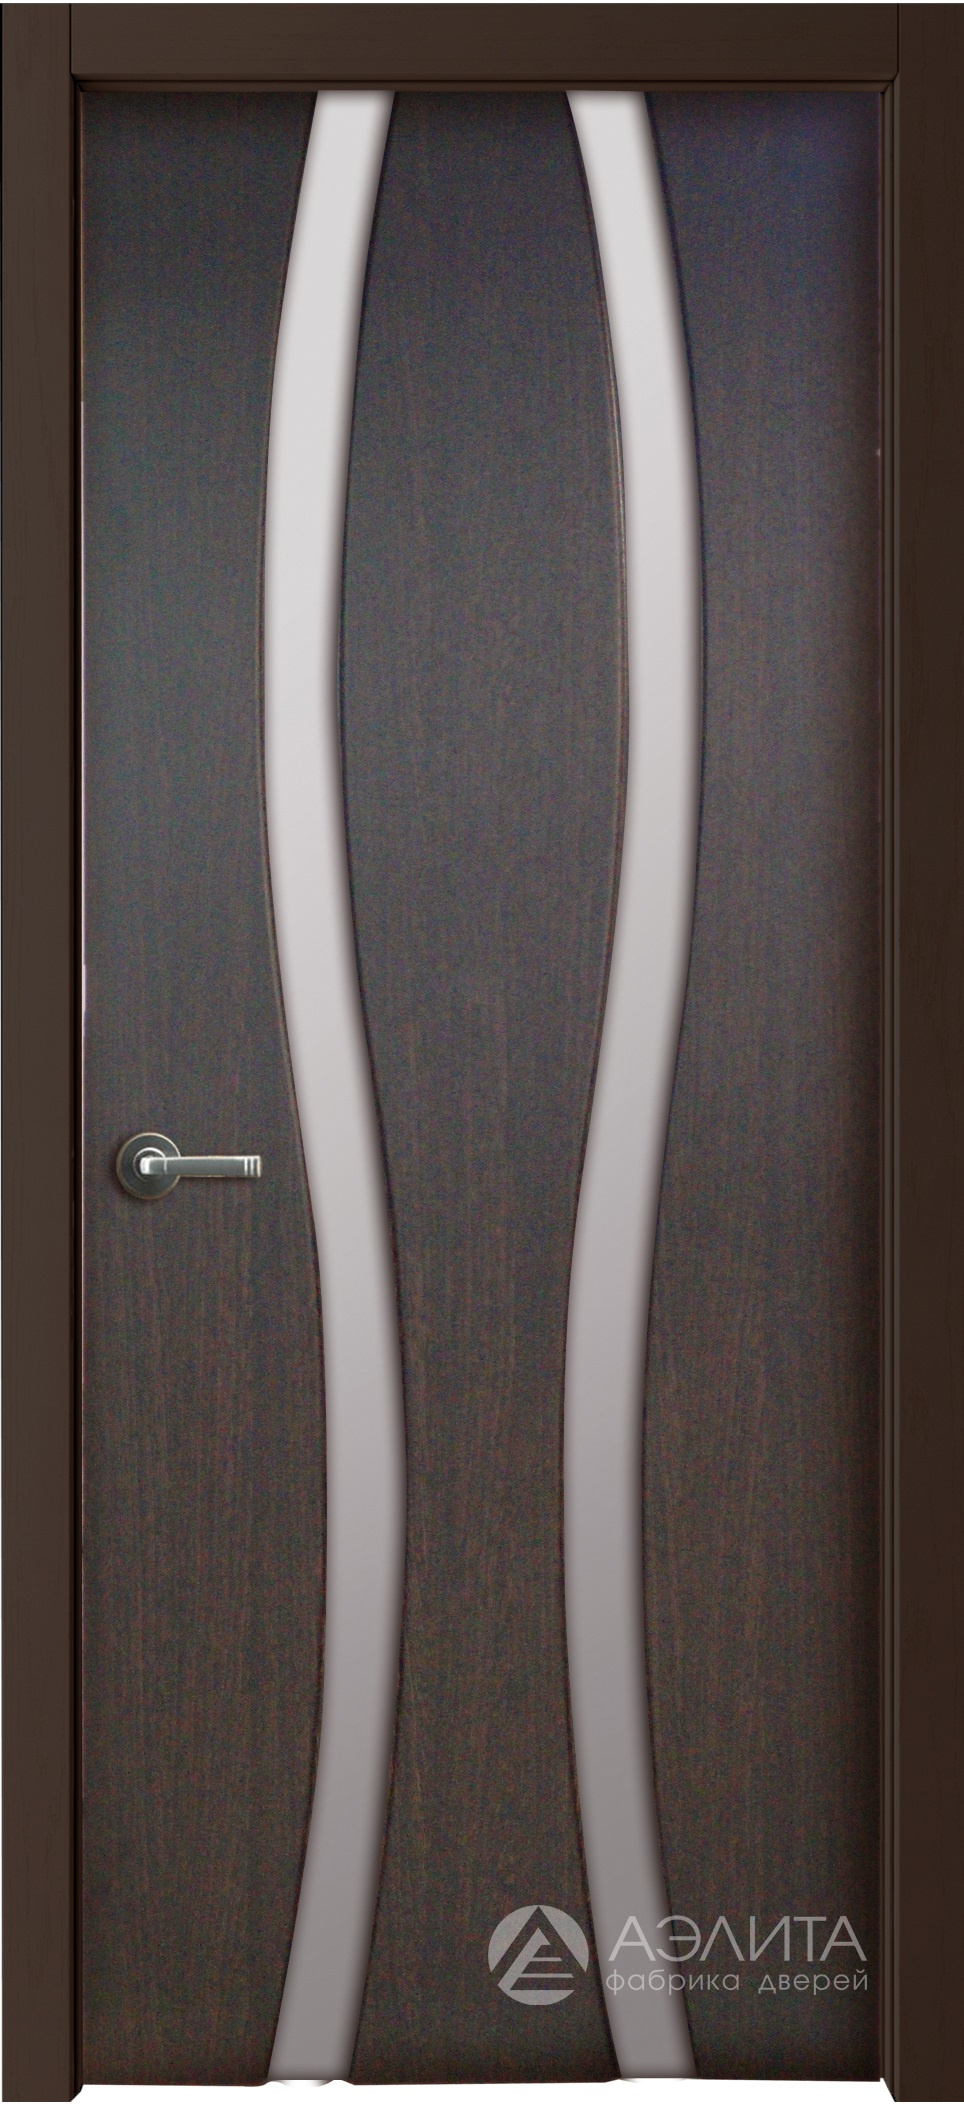 Аэлита Межкомнатная дверь Сириус 2 узких ДО, арт. 22158 - фото №1